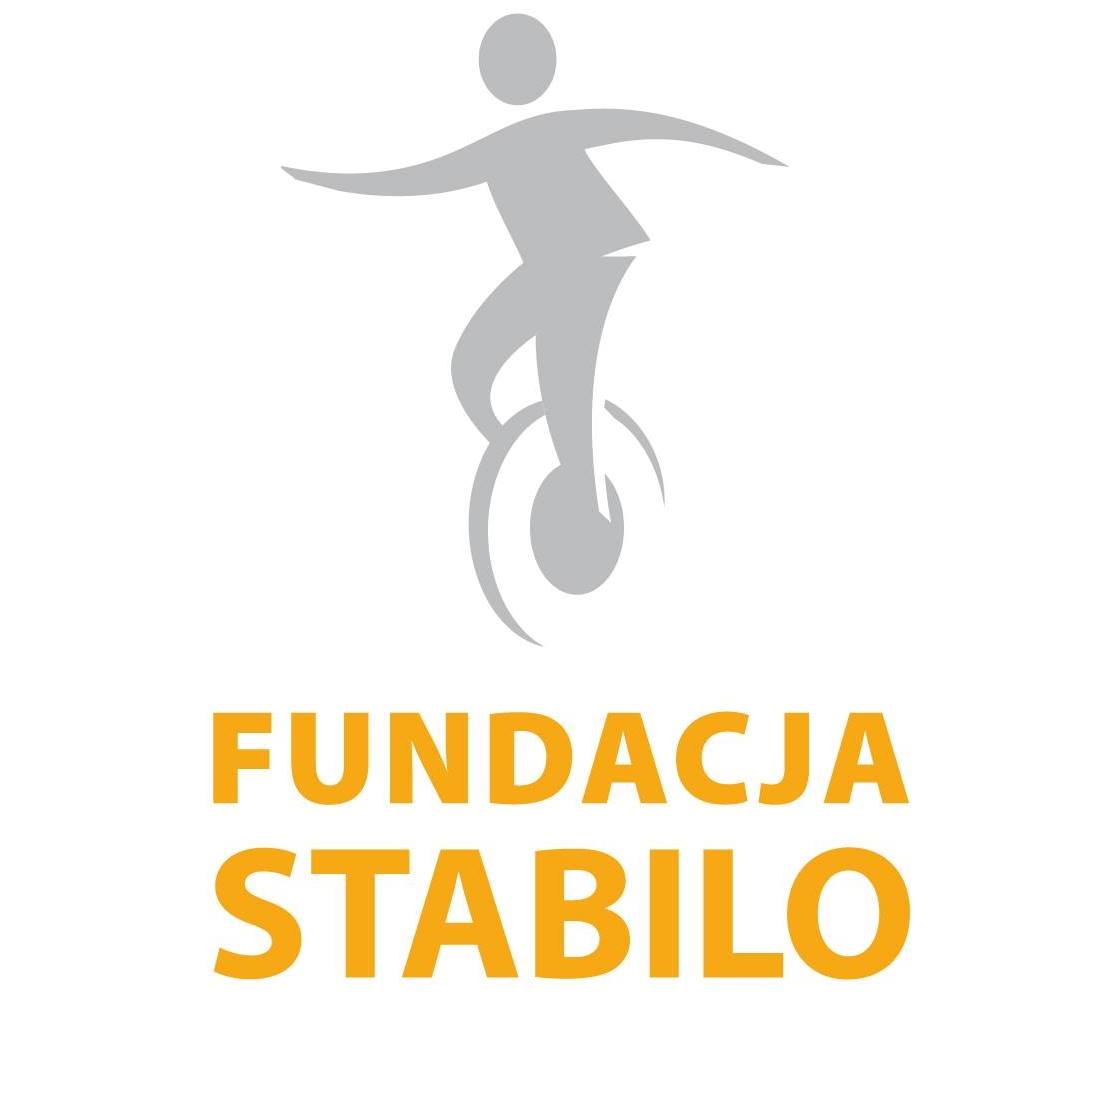 Fundacja Stabilo